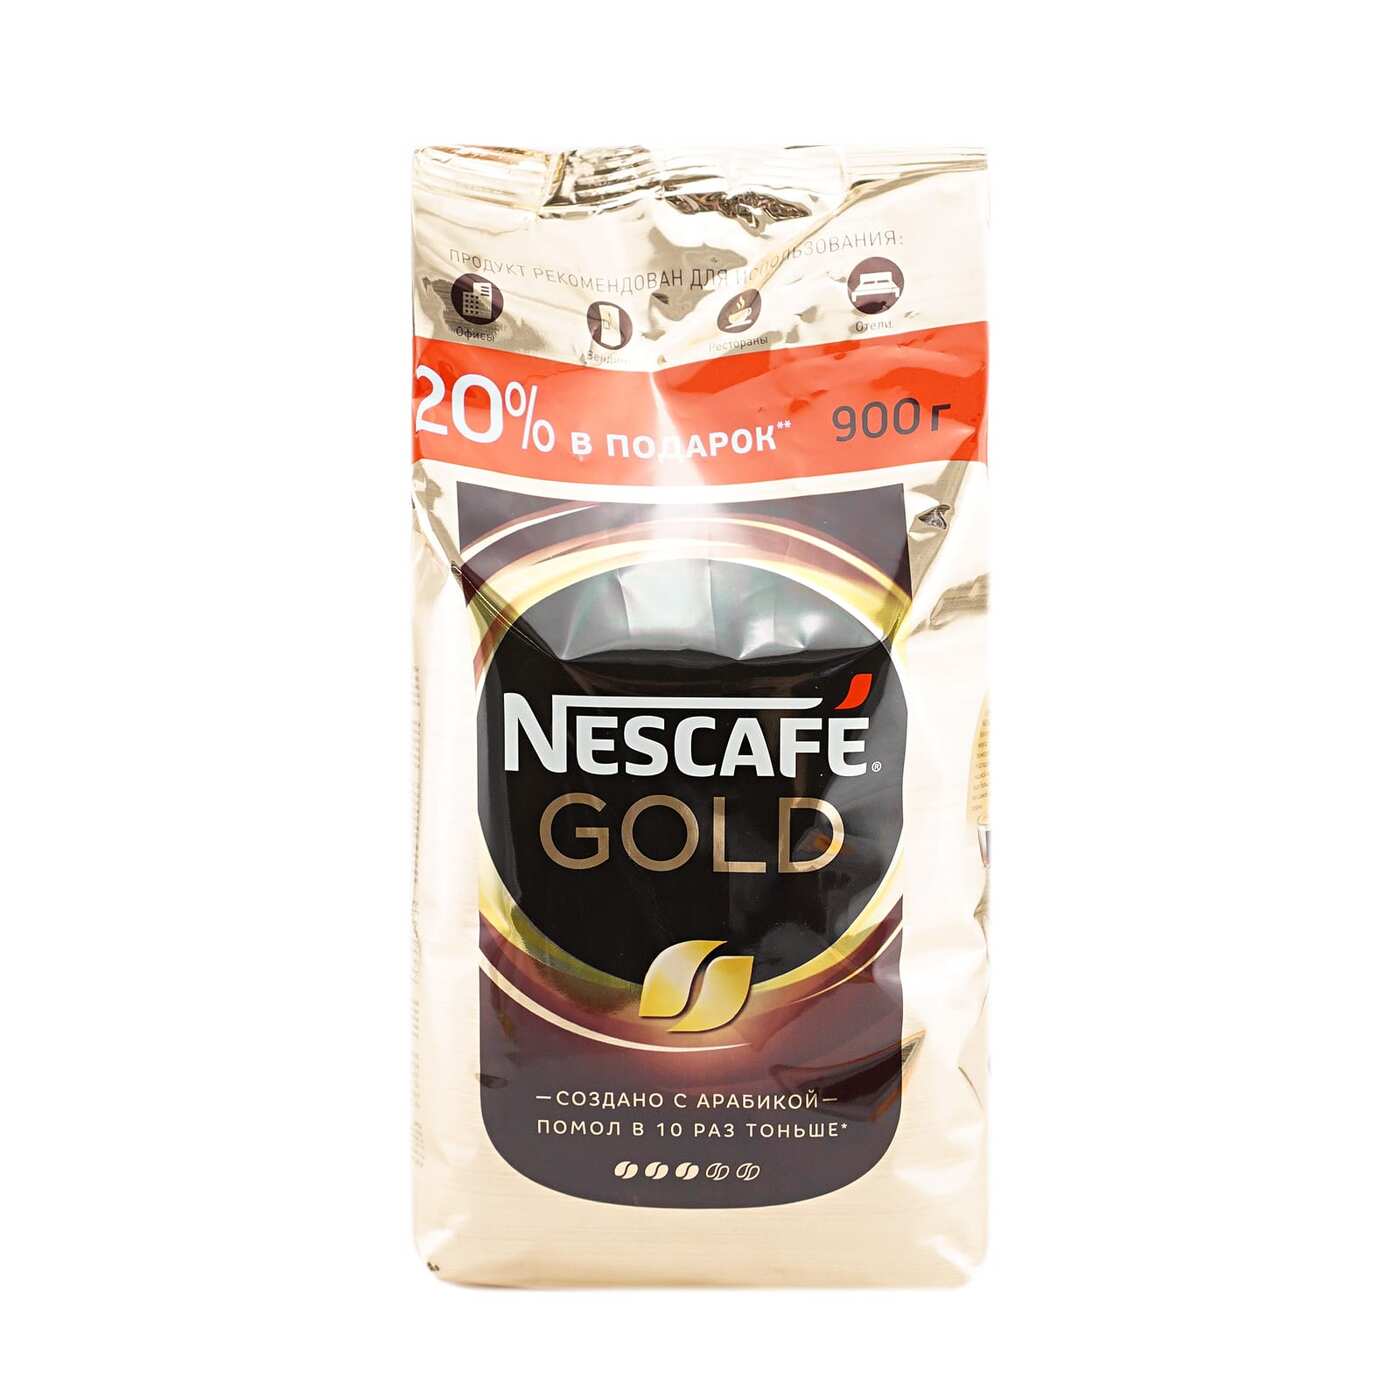 Кофе растворимый nescafe gold 900. Nescafe кофе Gold 900г.. Nescafe Gold 750г. Кофе Нескафе Голд 750г. Кофе растворимый Nescafe Gold натуральный сублимированный, 900г.